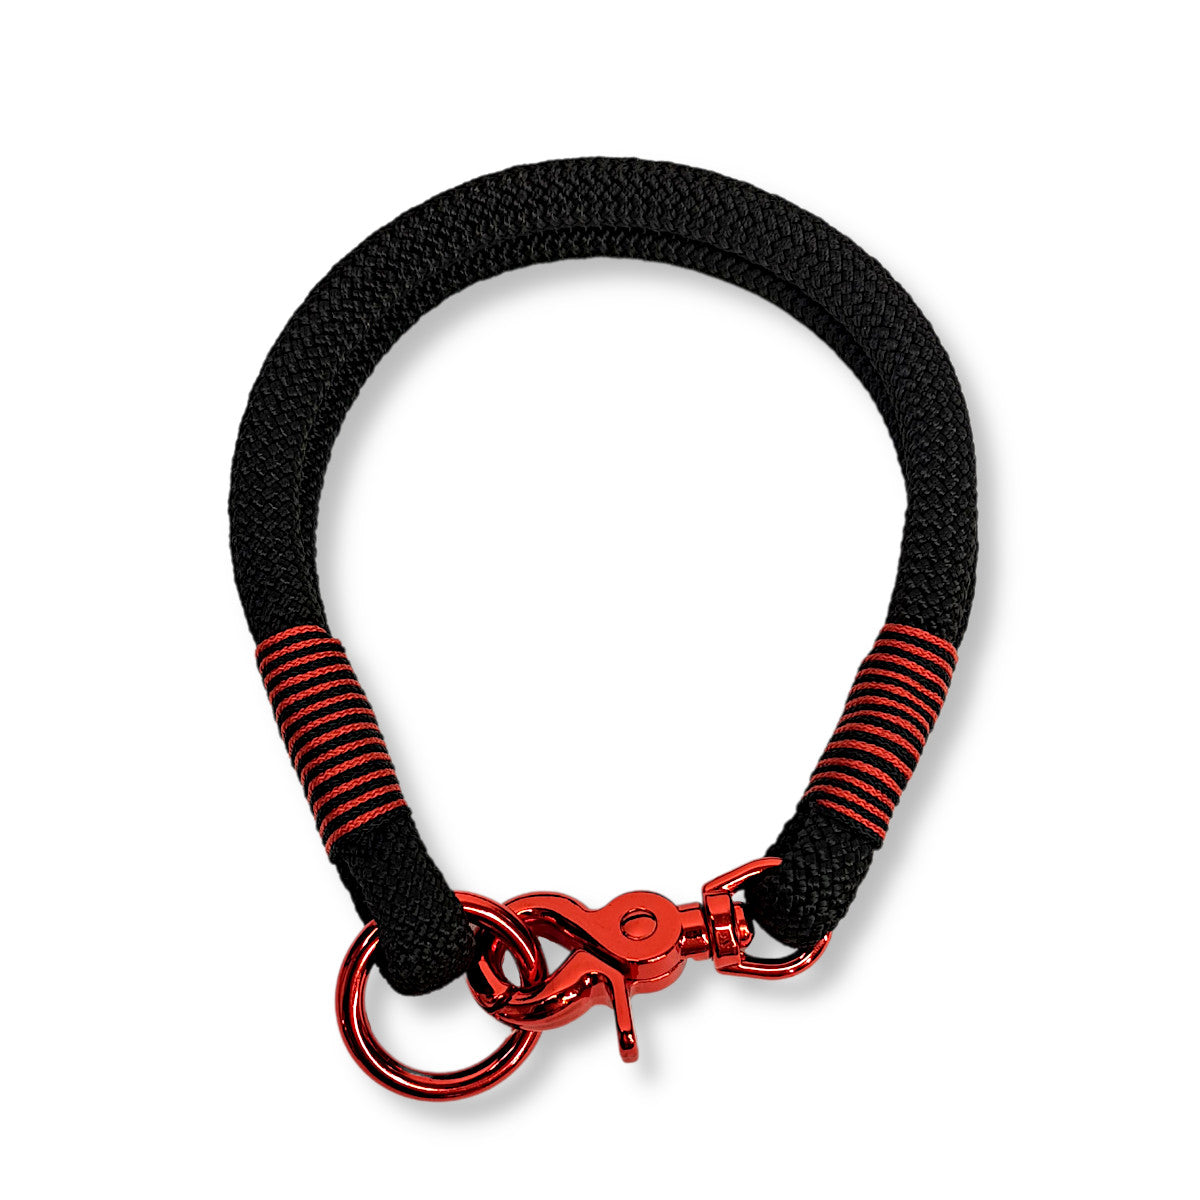 Hundehalsband aus Segeltau in schwarz-rot von SammyLunaDesigns.